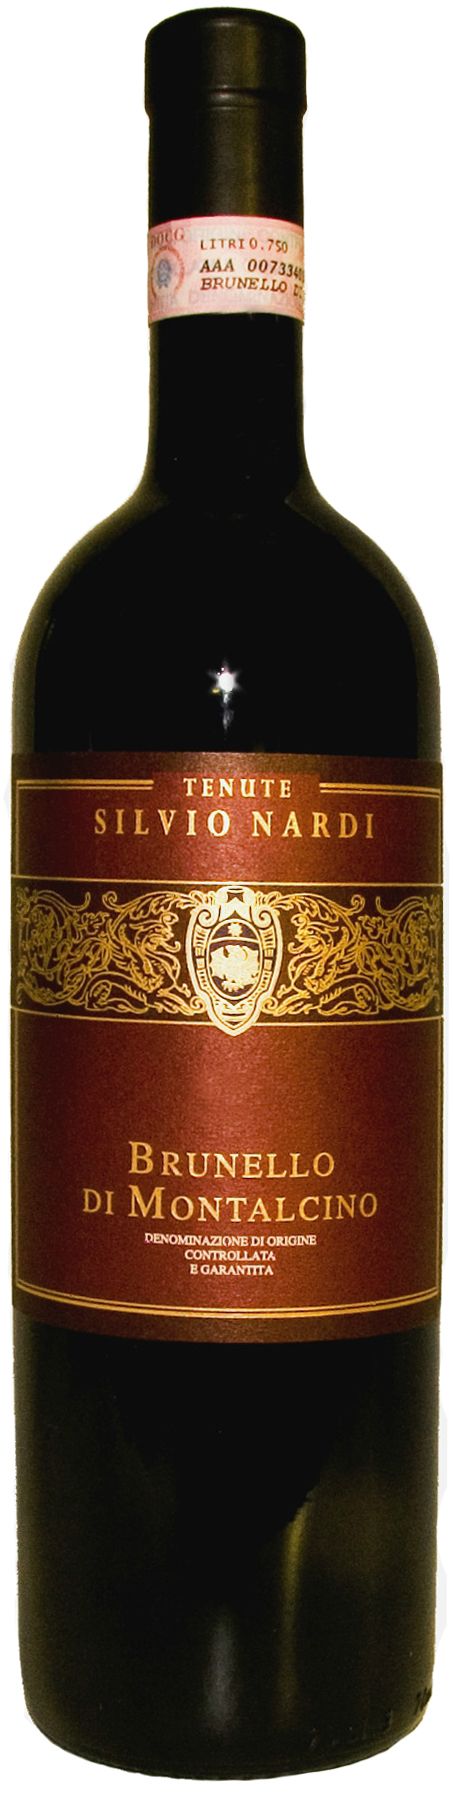 Tenute Silvio Nardi, Brunello Di Montalcino, 2001